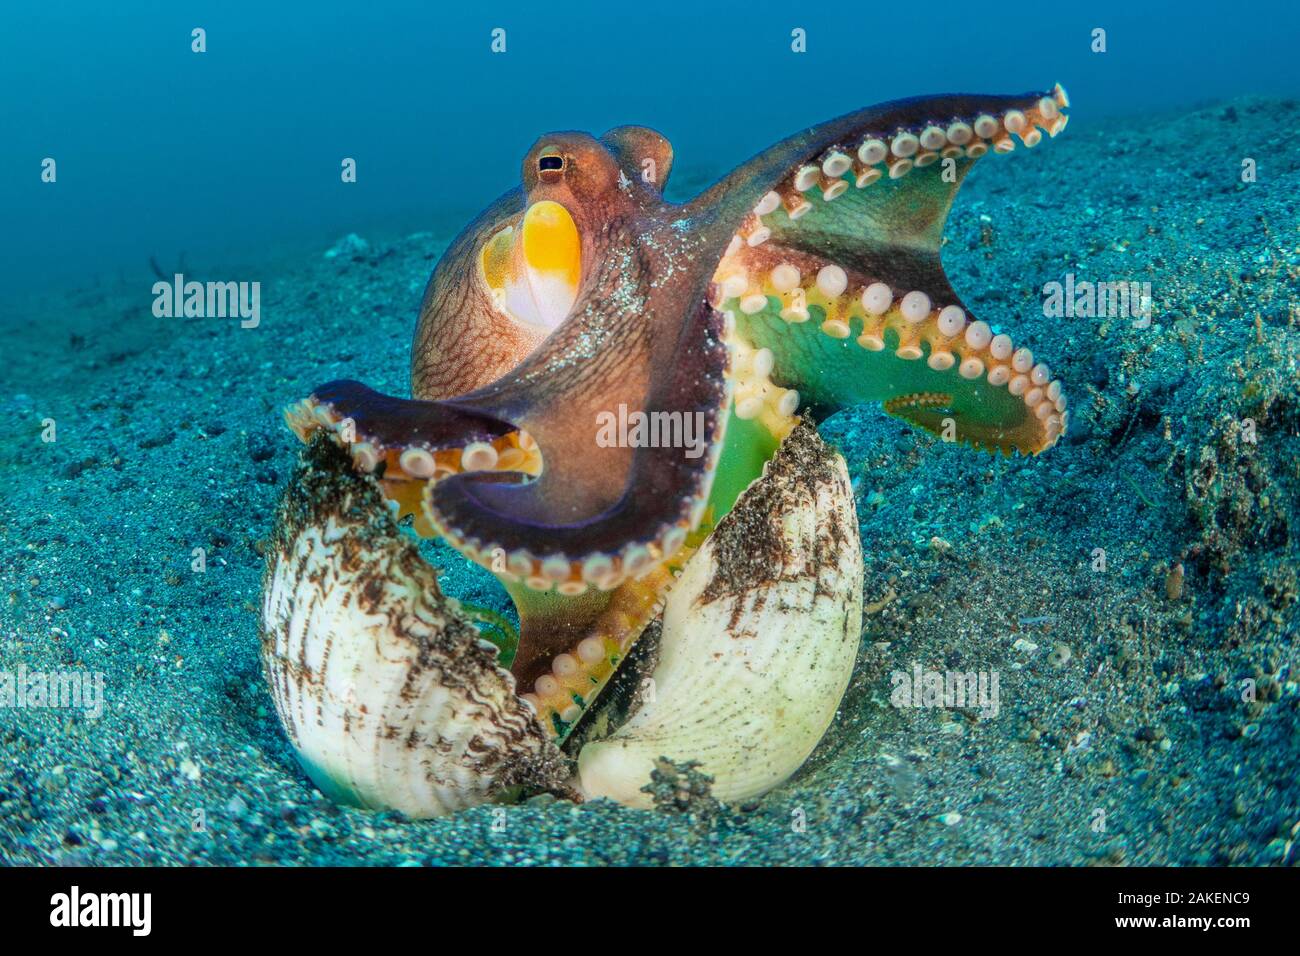 Un grand angle de vue macro d'un poulpe persillés ( Amphioctopus marginatus) les étirements de son emballage den dans un vieux clam shell. Bitung, nord de Sulawesi, en Indonésie. Détroit de Lembeh, Mer Moluques. Banque D'Images